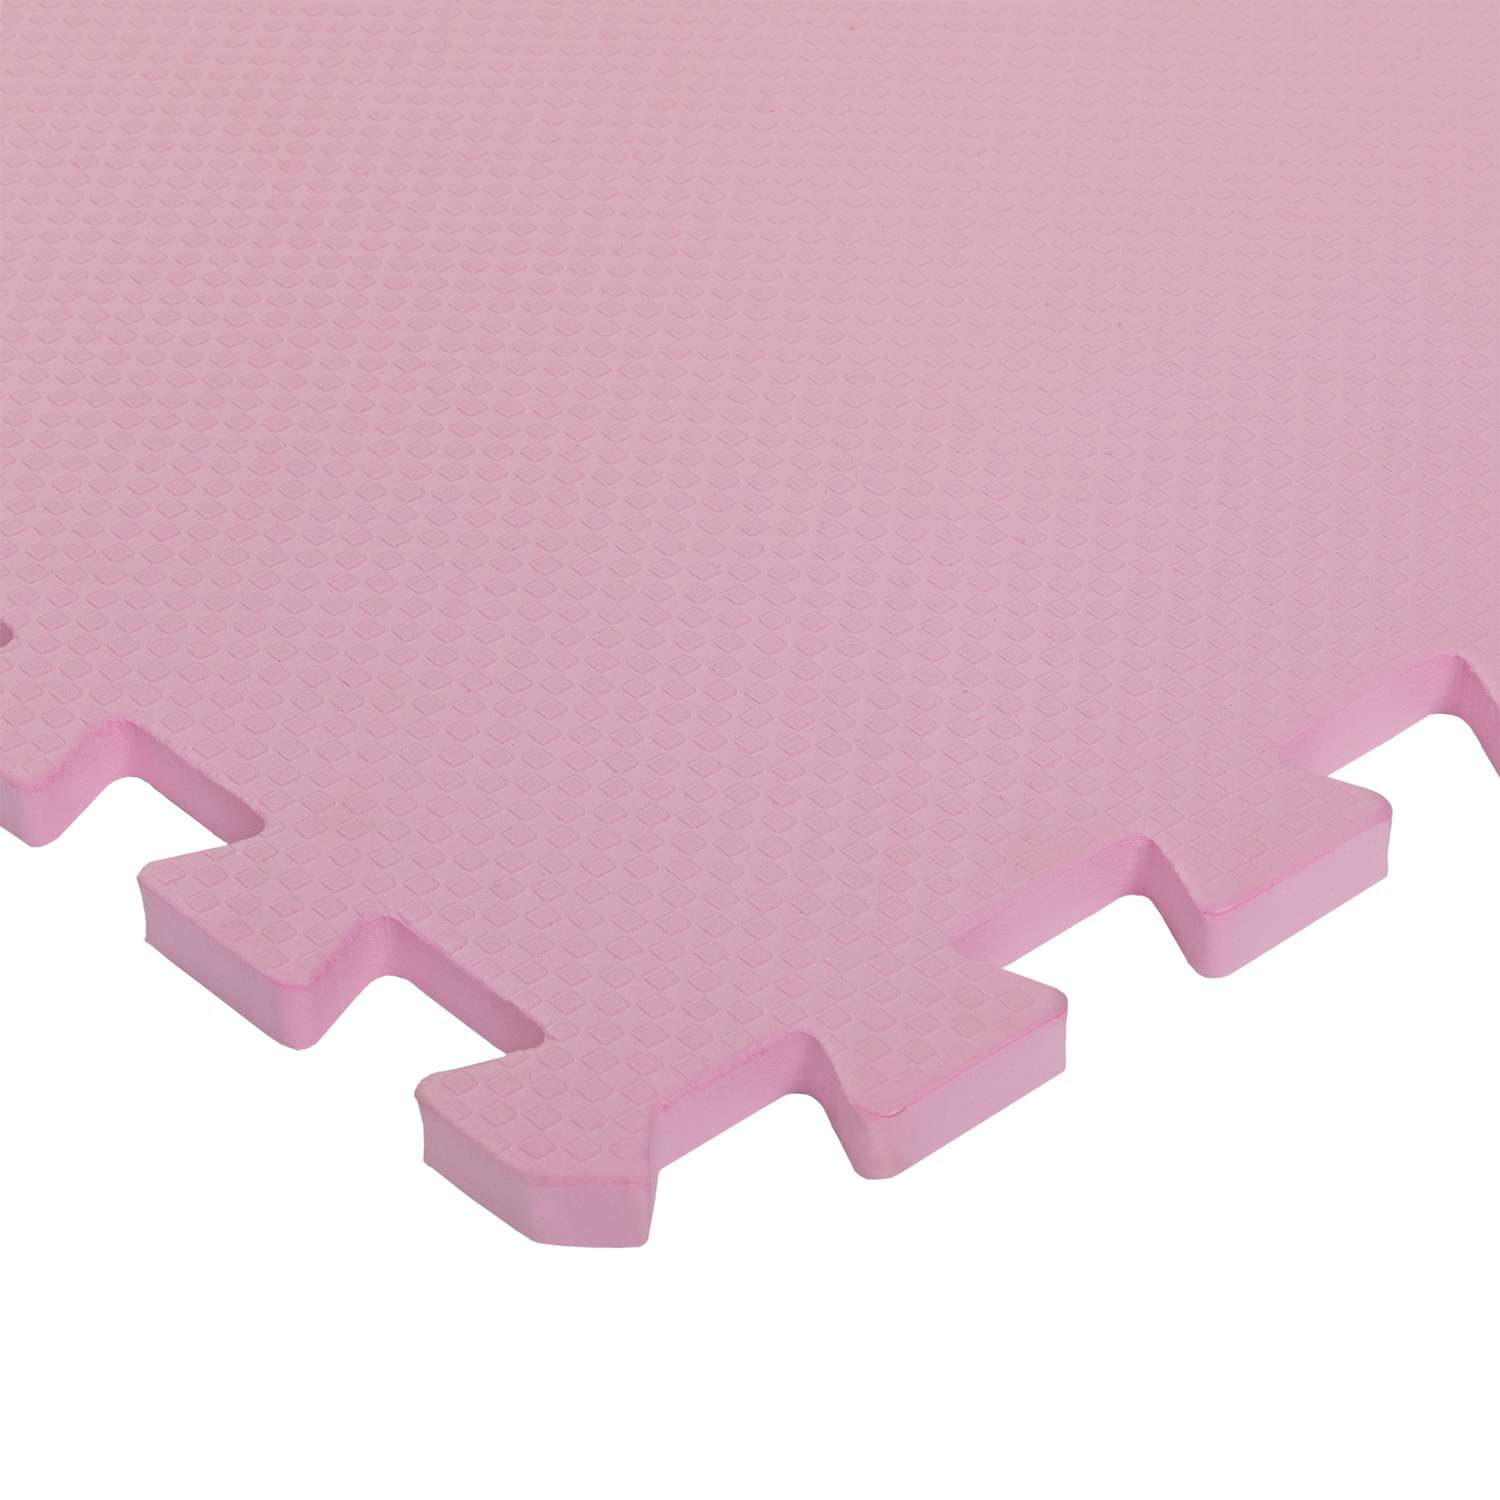 Развивающий детский коврик Eco cover игровой мягкий пол для ползания розовый 60х60 - фото 2